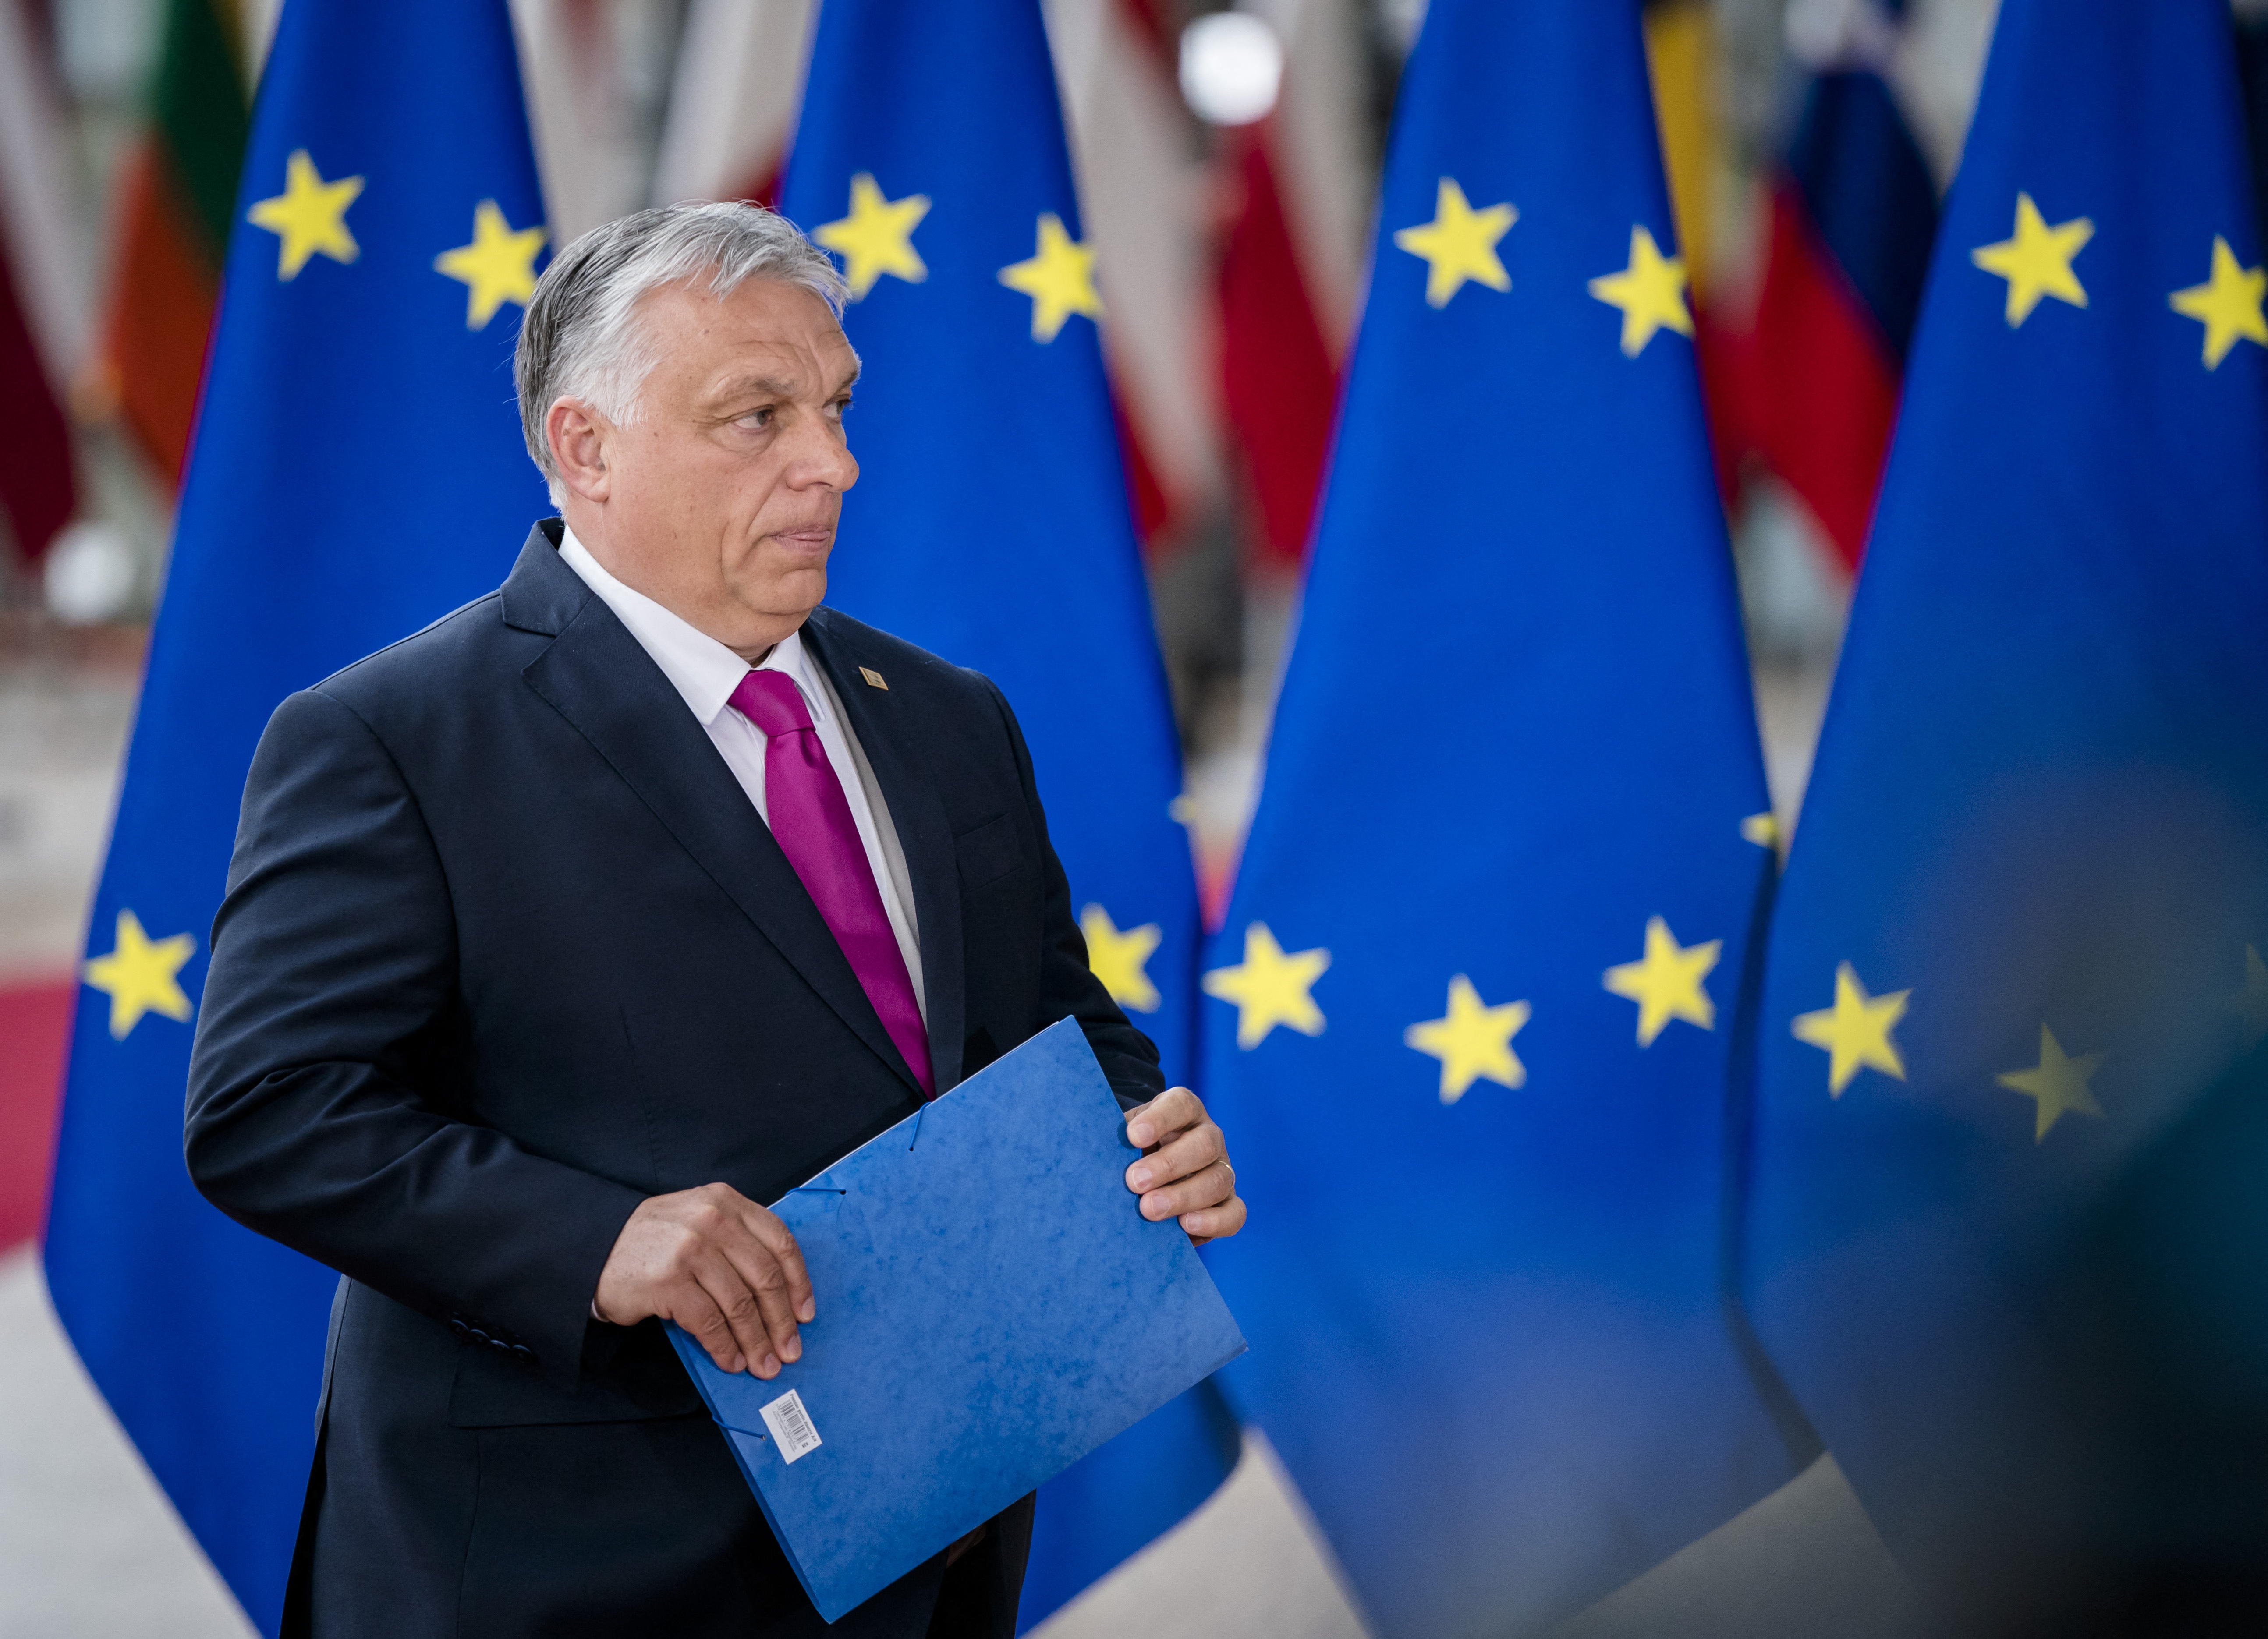 Vége a keménykedésnek, a magyar kormány egyre több brüsszeli igényt kész teljesíteni